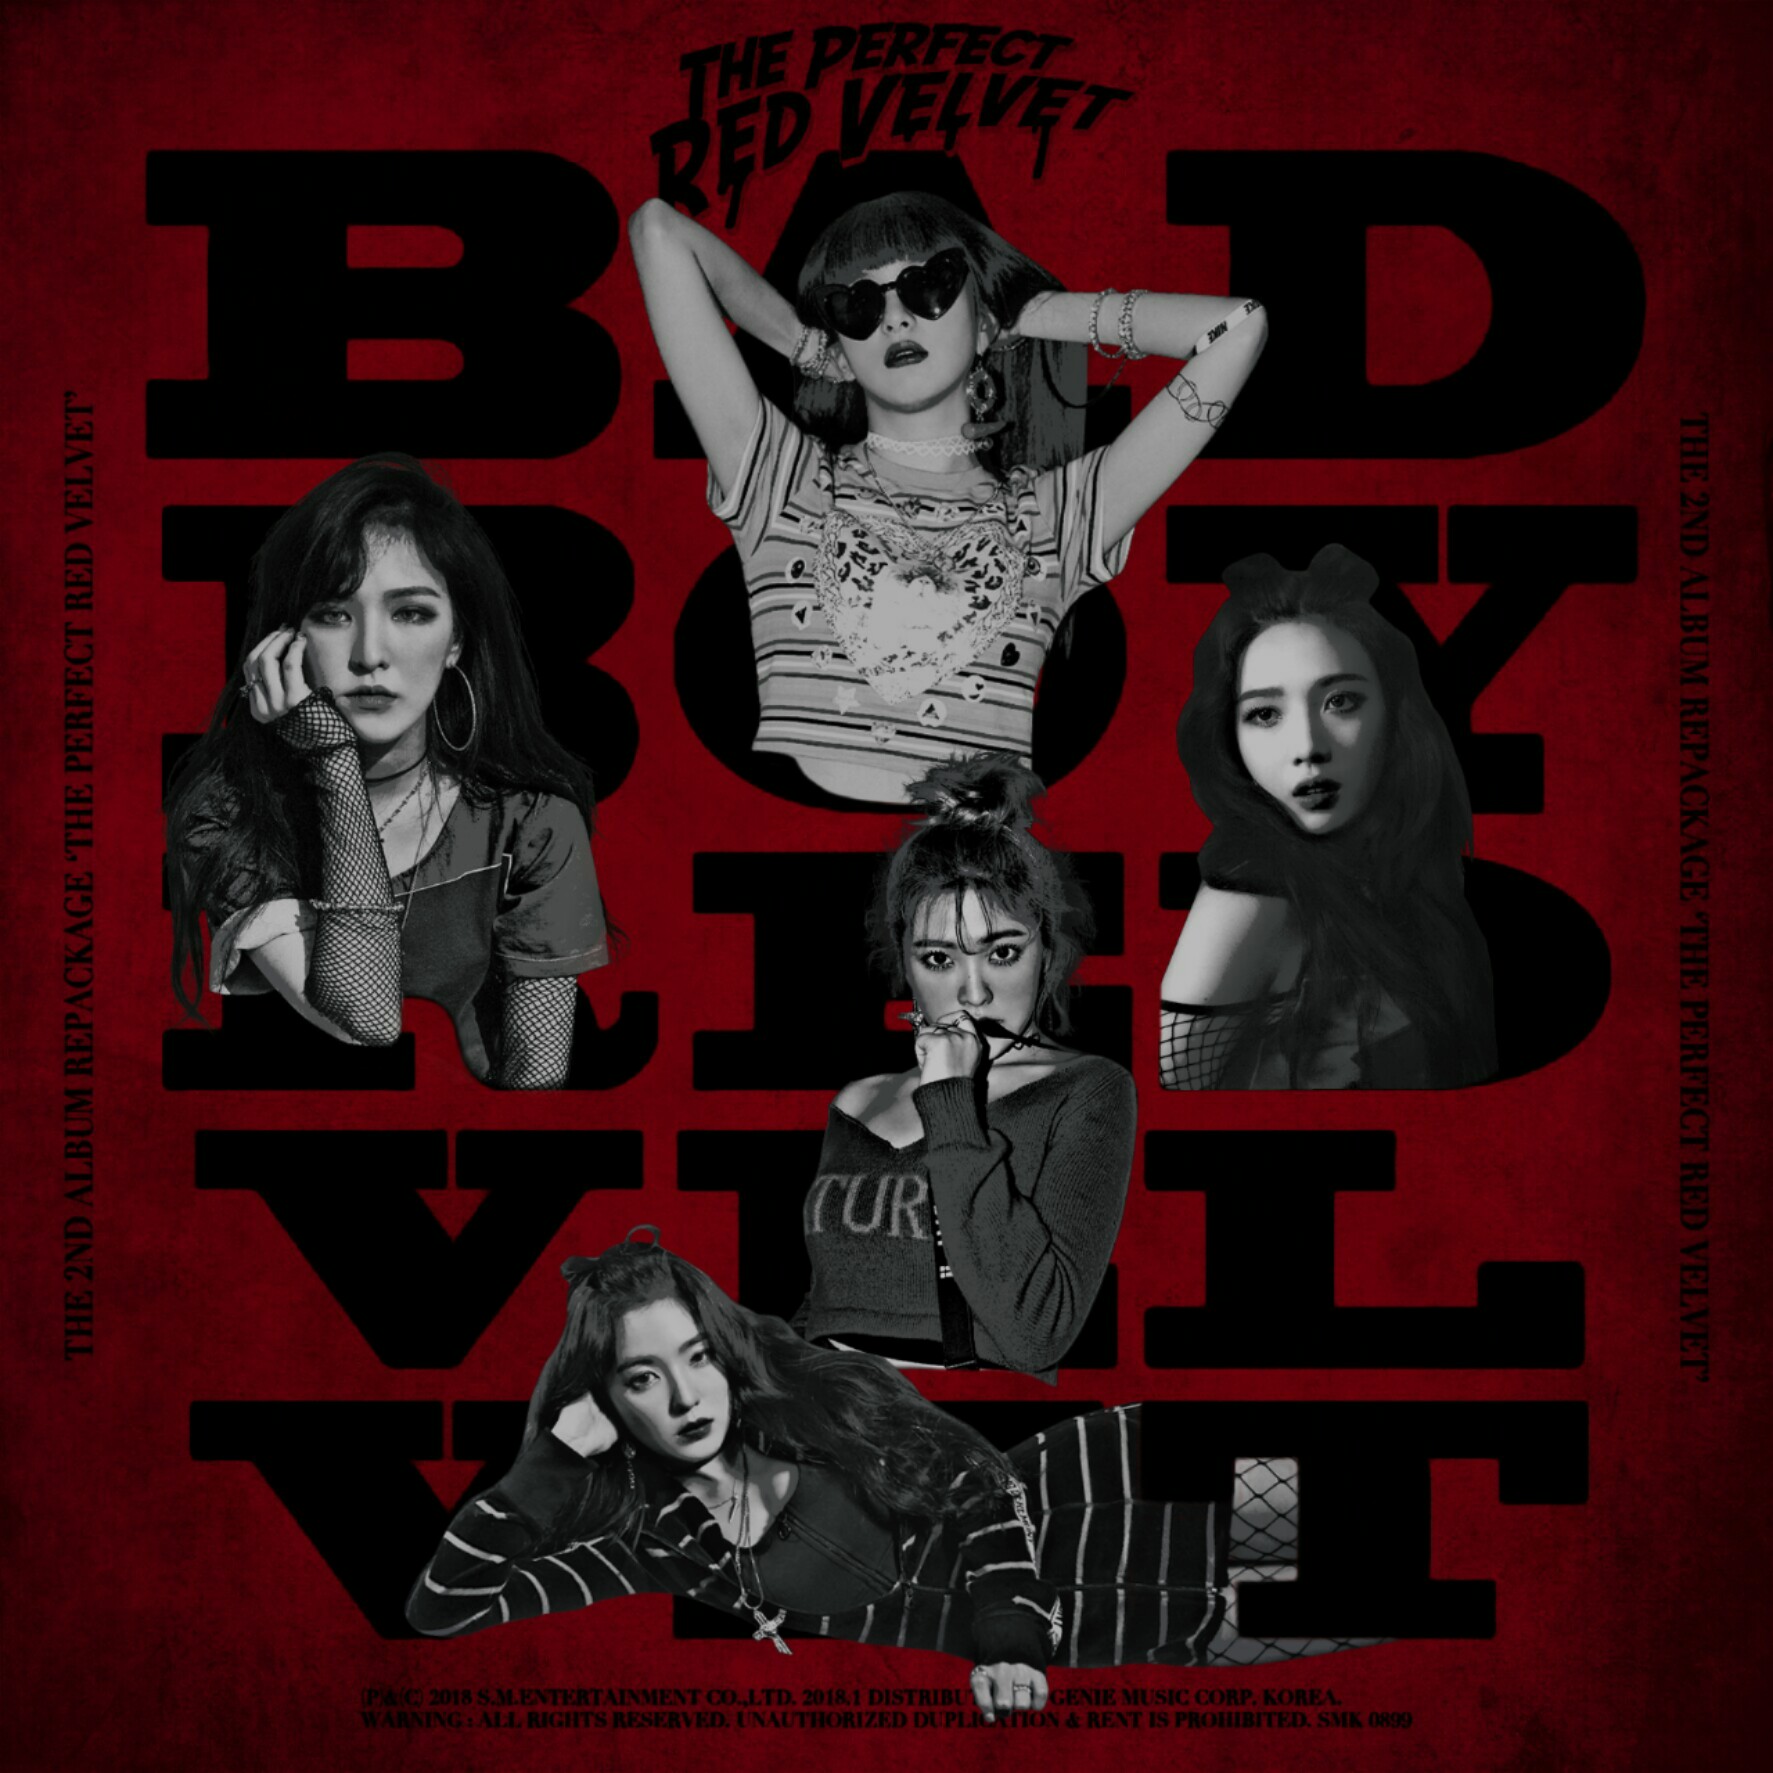 RED VELVET BAD BOY / THE PERFECT RED VELVET album by LEAlbum on DeviantArt